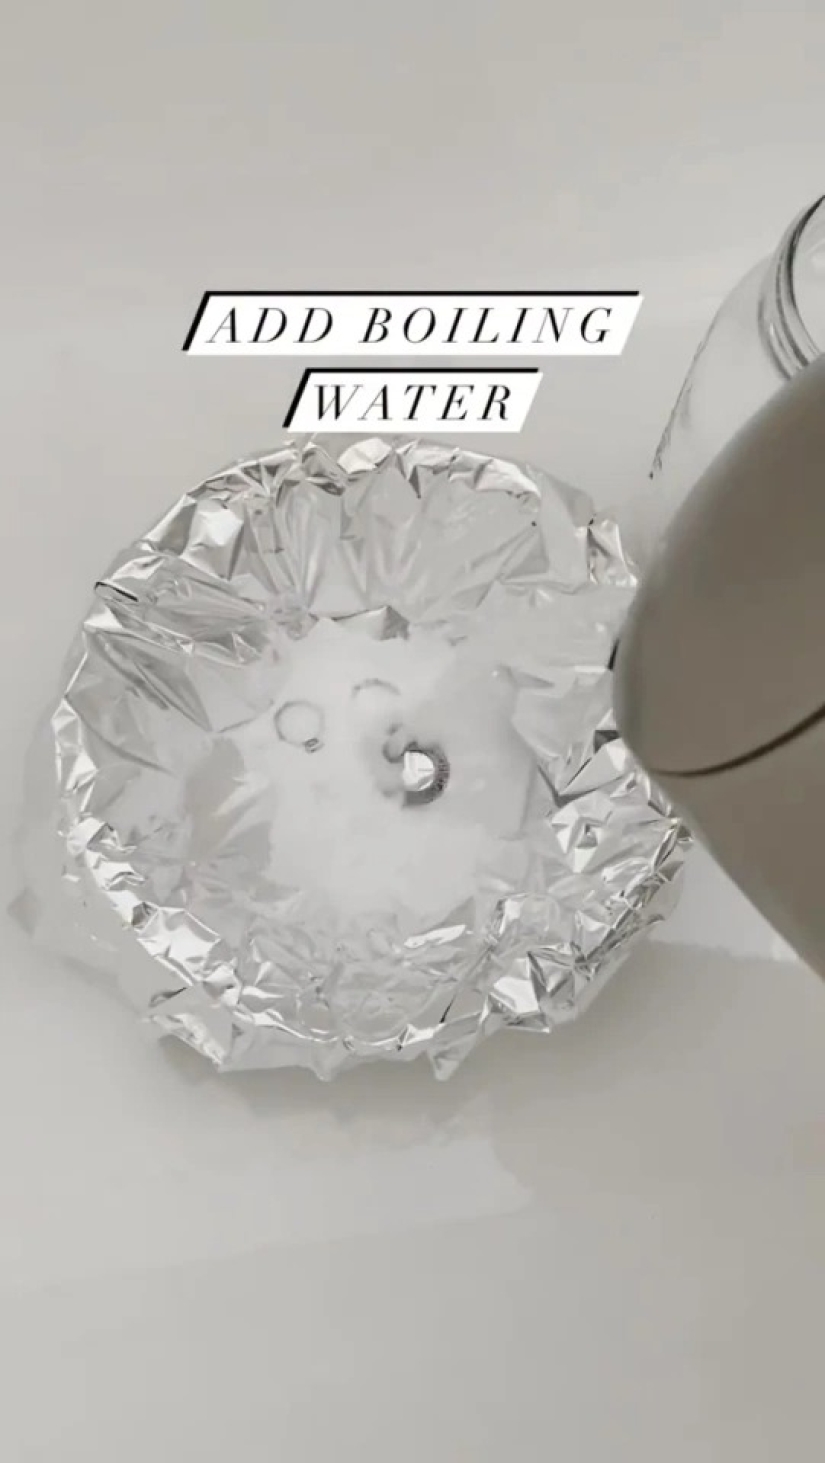 Soda, papel de aluminio, agua hirviendo: aquí hay una gran manera de limpiar joyas de manera rápida y efectiva